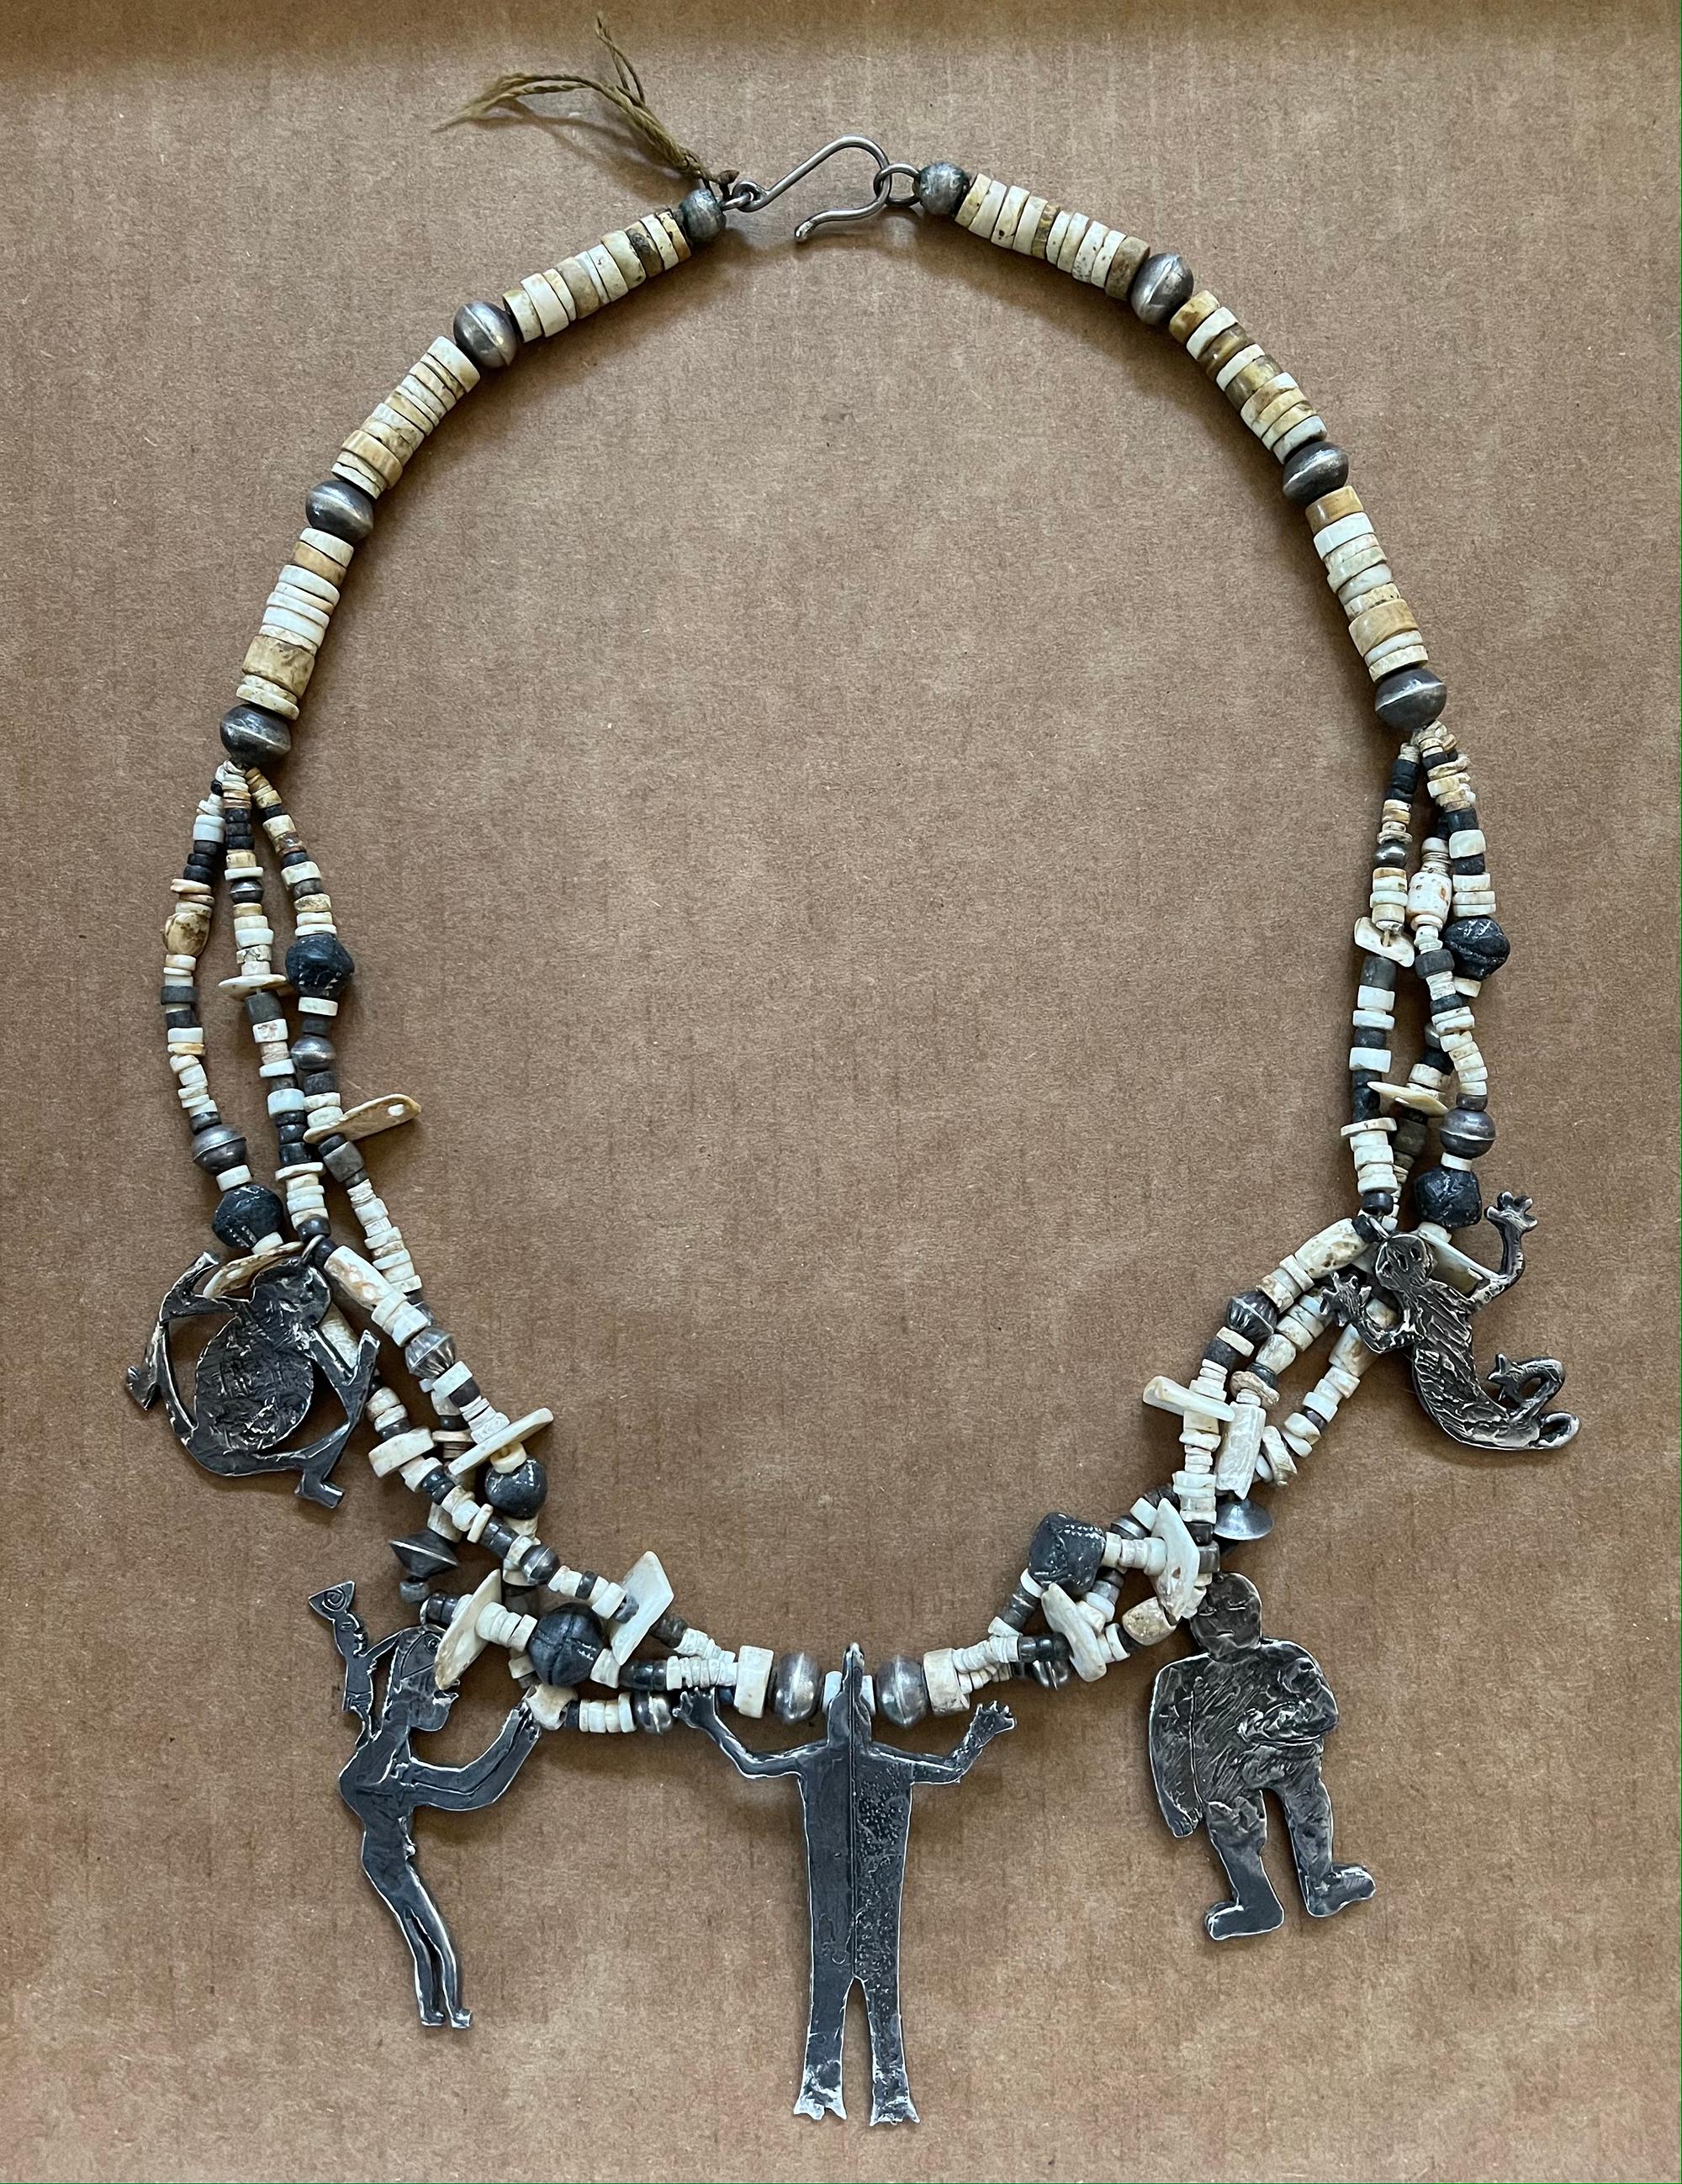 Annette Bird Stammes-Halskette aus Knochen, Perlen, Muscheln und Silber

Diese skurrile Halskette stammt von Annette R. Bird (1925-2016), einer bekannten südkalifornischen Künstlerin, Bildhauerin, Juwelierin und Gründerin der Bead Society. Sie